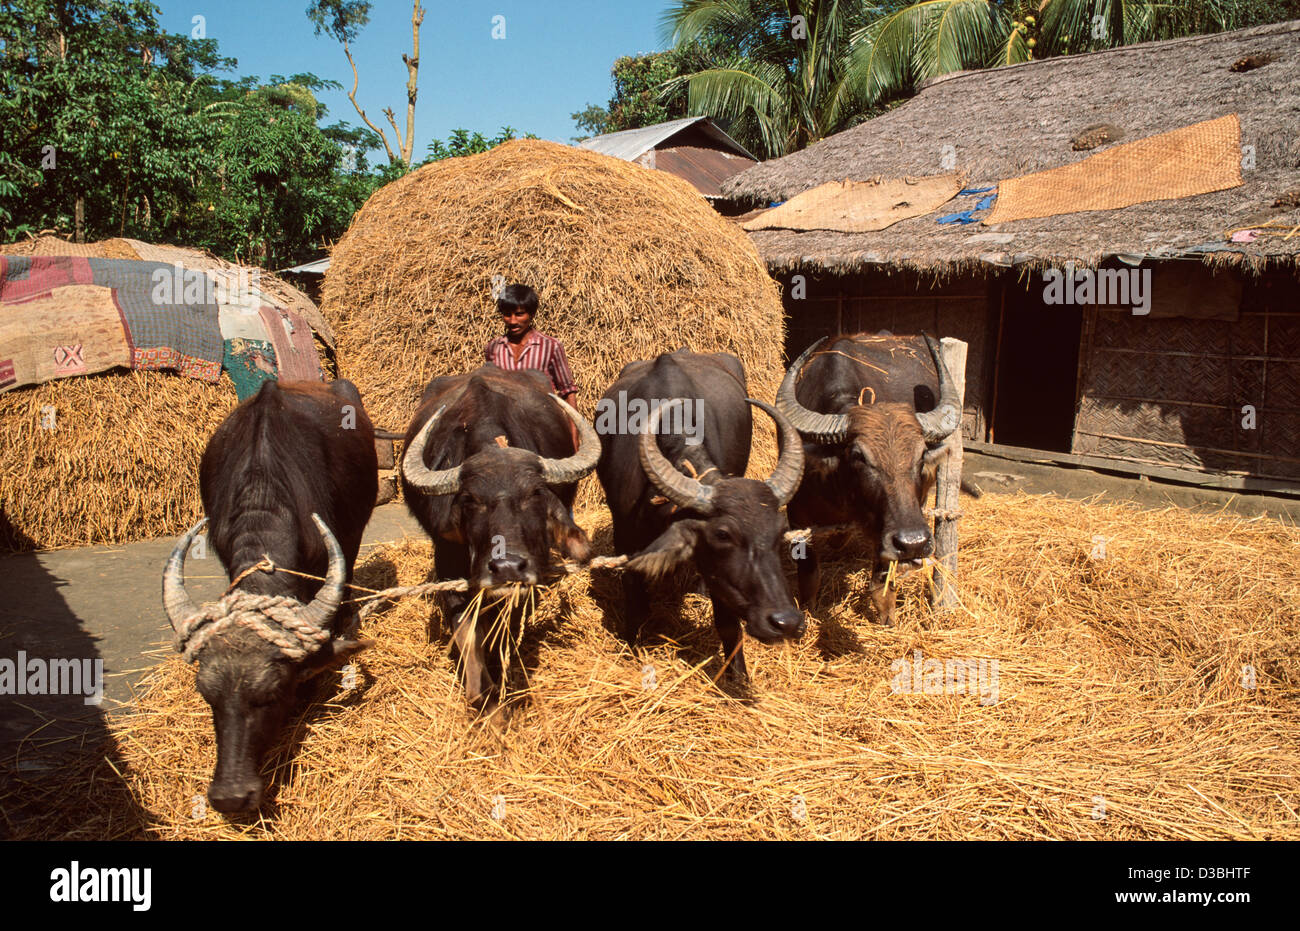 Fermier battage de sa récolte de riz avec de l'eau buffle.le foin restant est utilisé comme fourrage. Sandwip Island, baie du Bengale, Bangladesh Banque D'Images